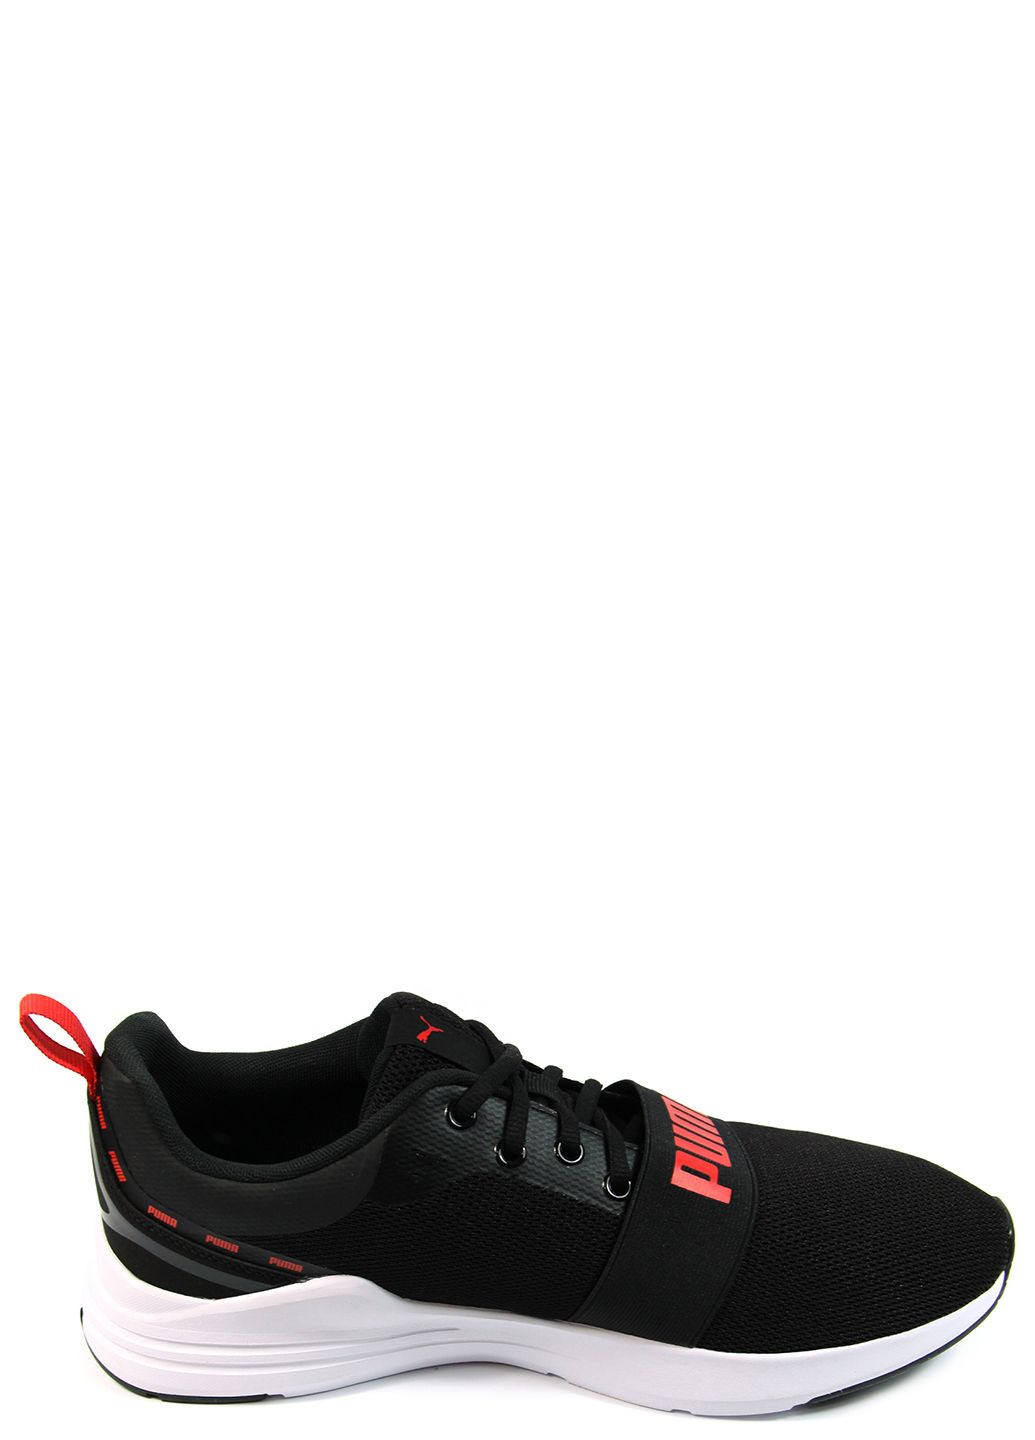 Черные демисезонные мужские кроссовки wired run signature 384601-02 Puma